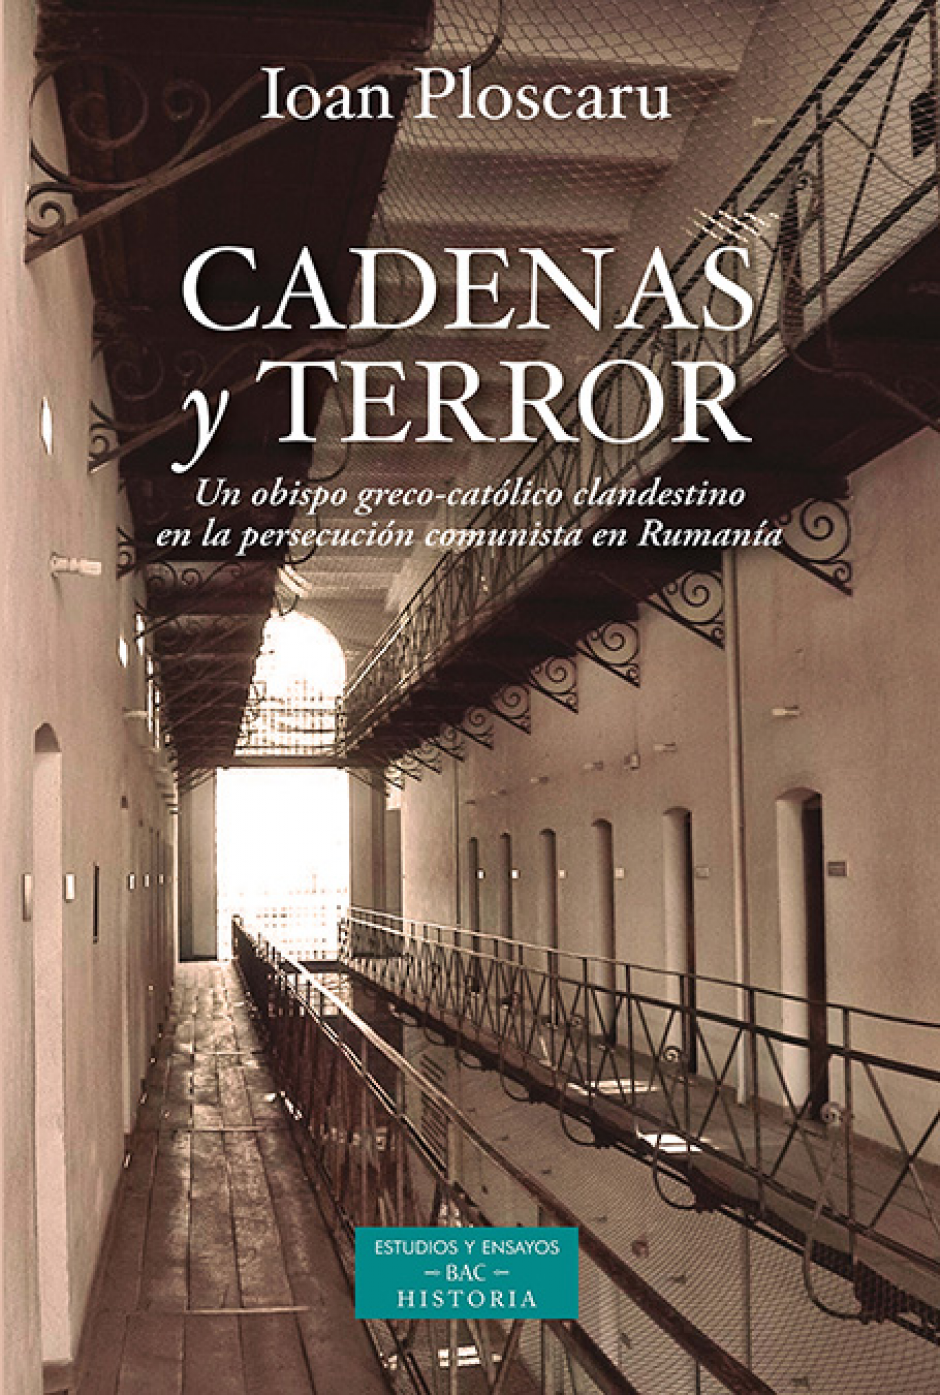 Portada del libro Cadenas y Terror, editado por la BAC